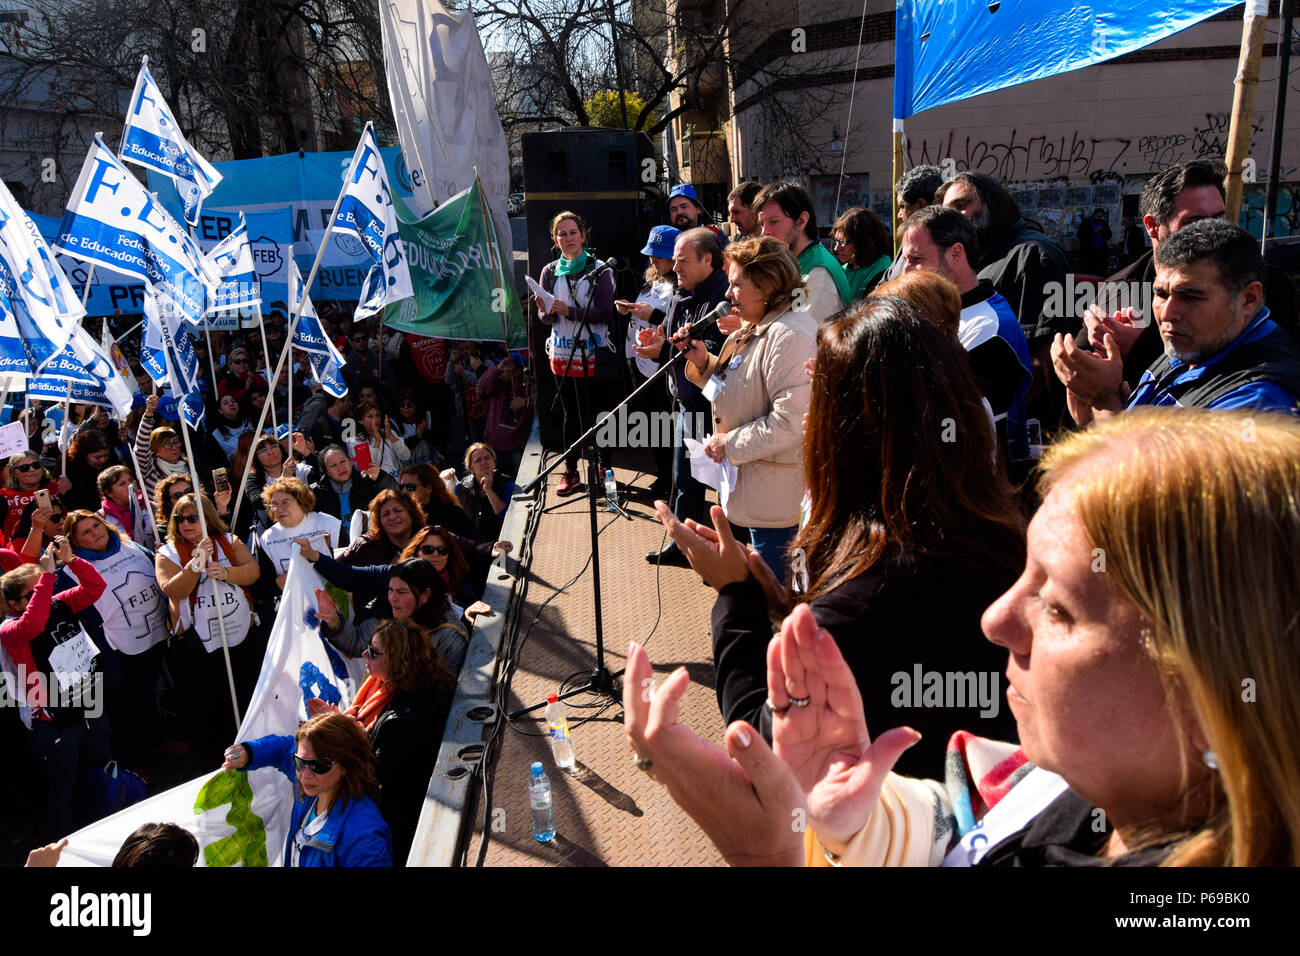 Union der Erzieher während der Demonstration. Union der Pädagogen aus der Provinz Buenos Aires Protest an das Ministerium für Bildung in La Plata für eine Gehaltserhöhung von 30 % und einer Aufhebung in der Resolution 1736, erfordern sie auch eine Generalstreik von allen Pädagogen während des Protestes. Stockfoto